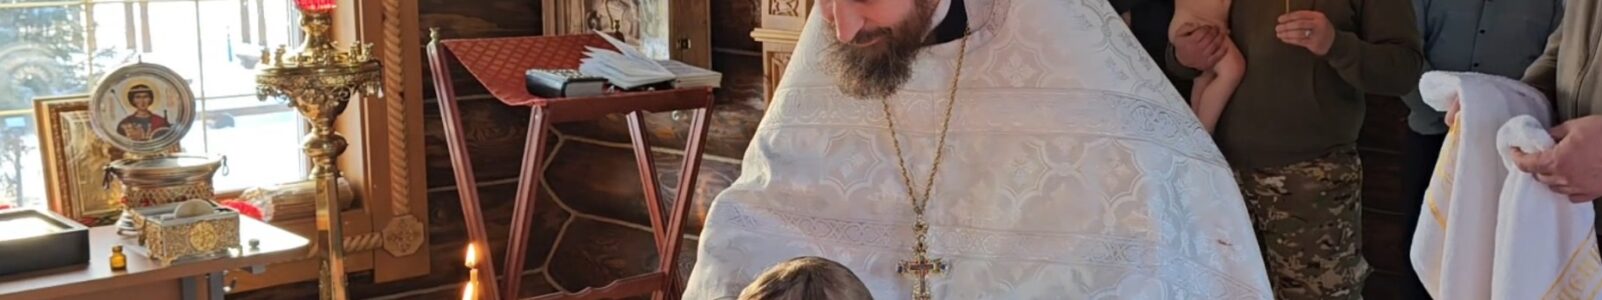 Два мальчика из Архангельска приняли Крещение в Георгиевском храме на о.Фомино